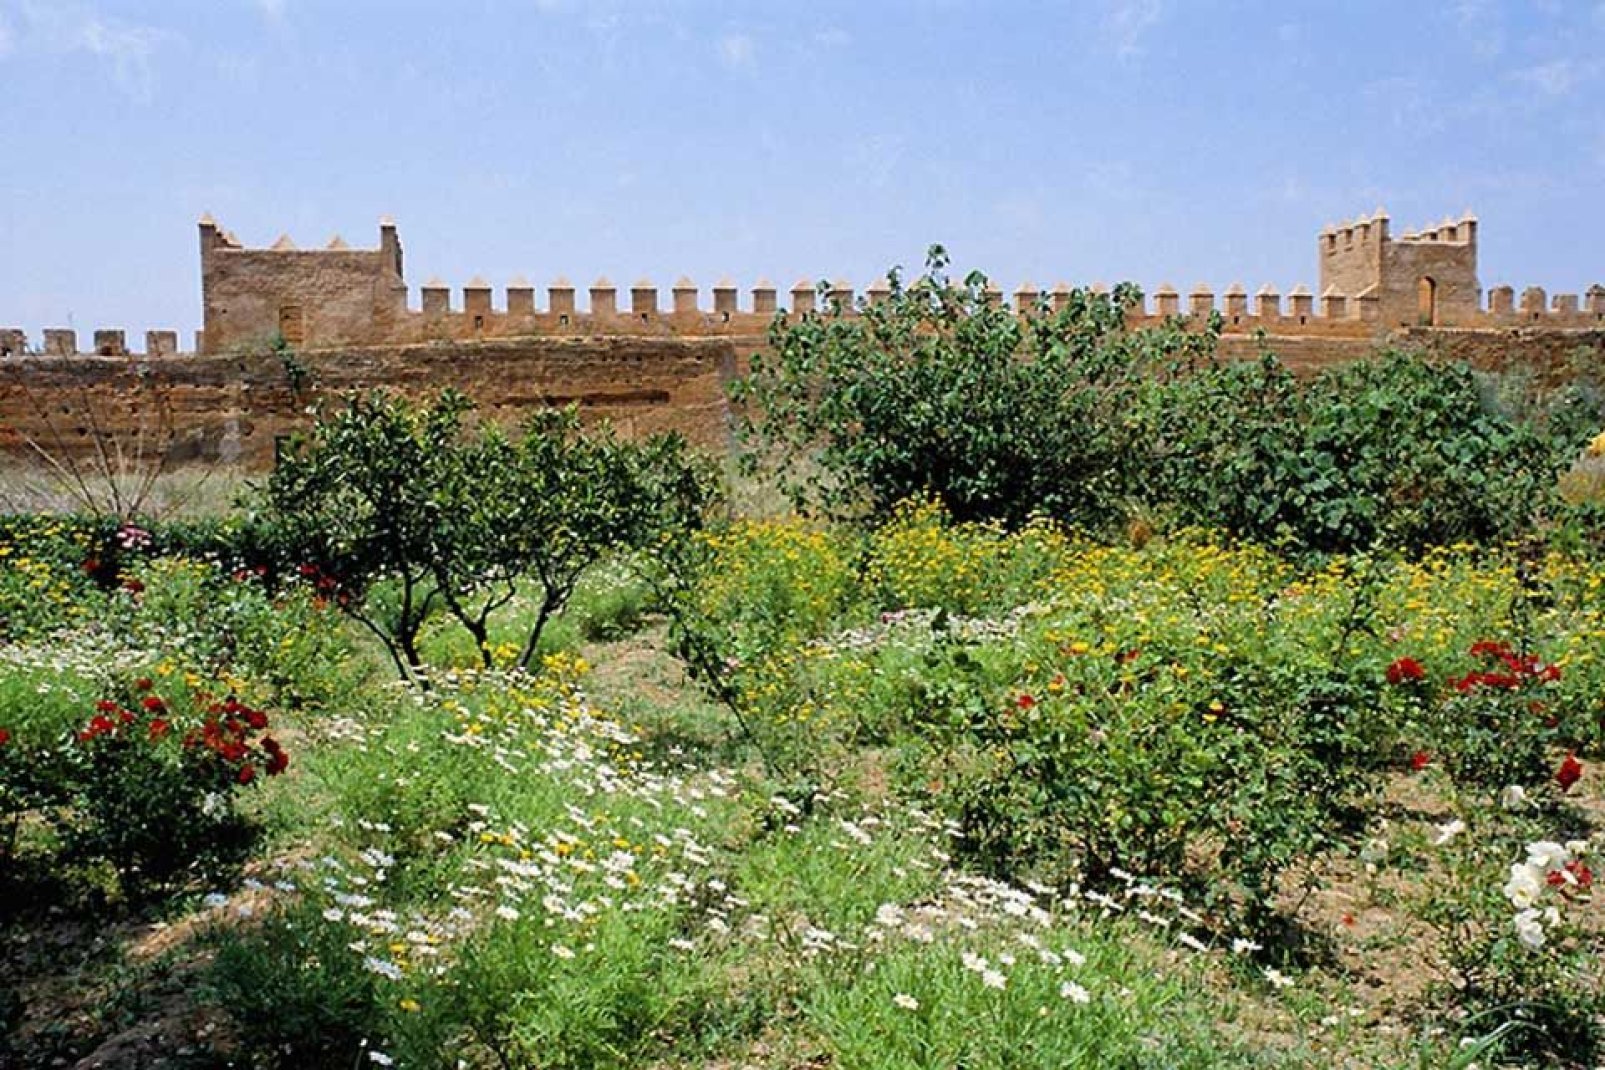 Tras la visita de la kasbah, aprovecha para pasear por los tranquilos jardines de estilo andaluz.